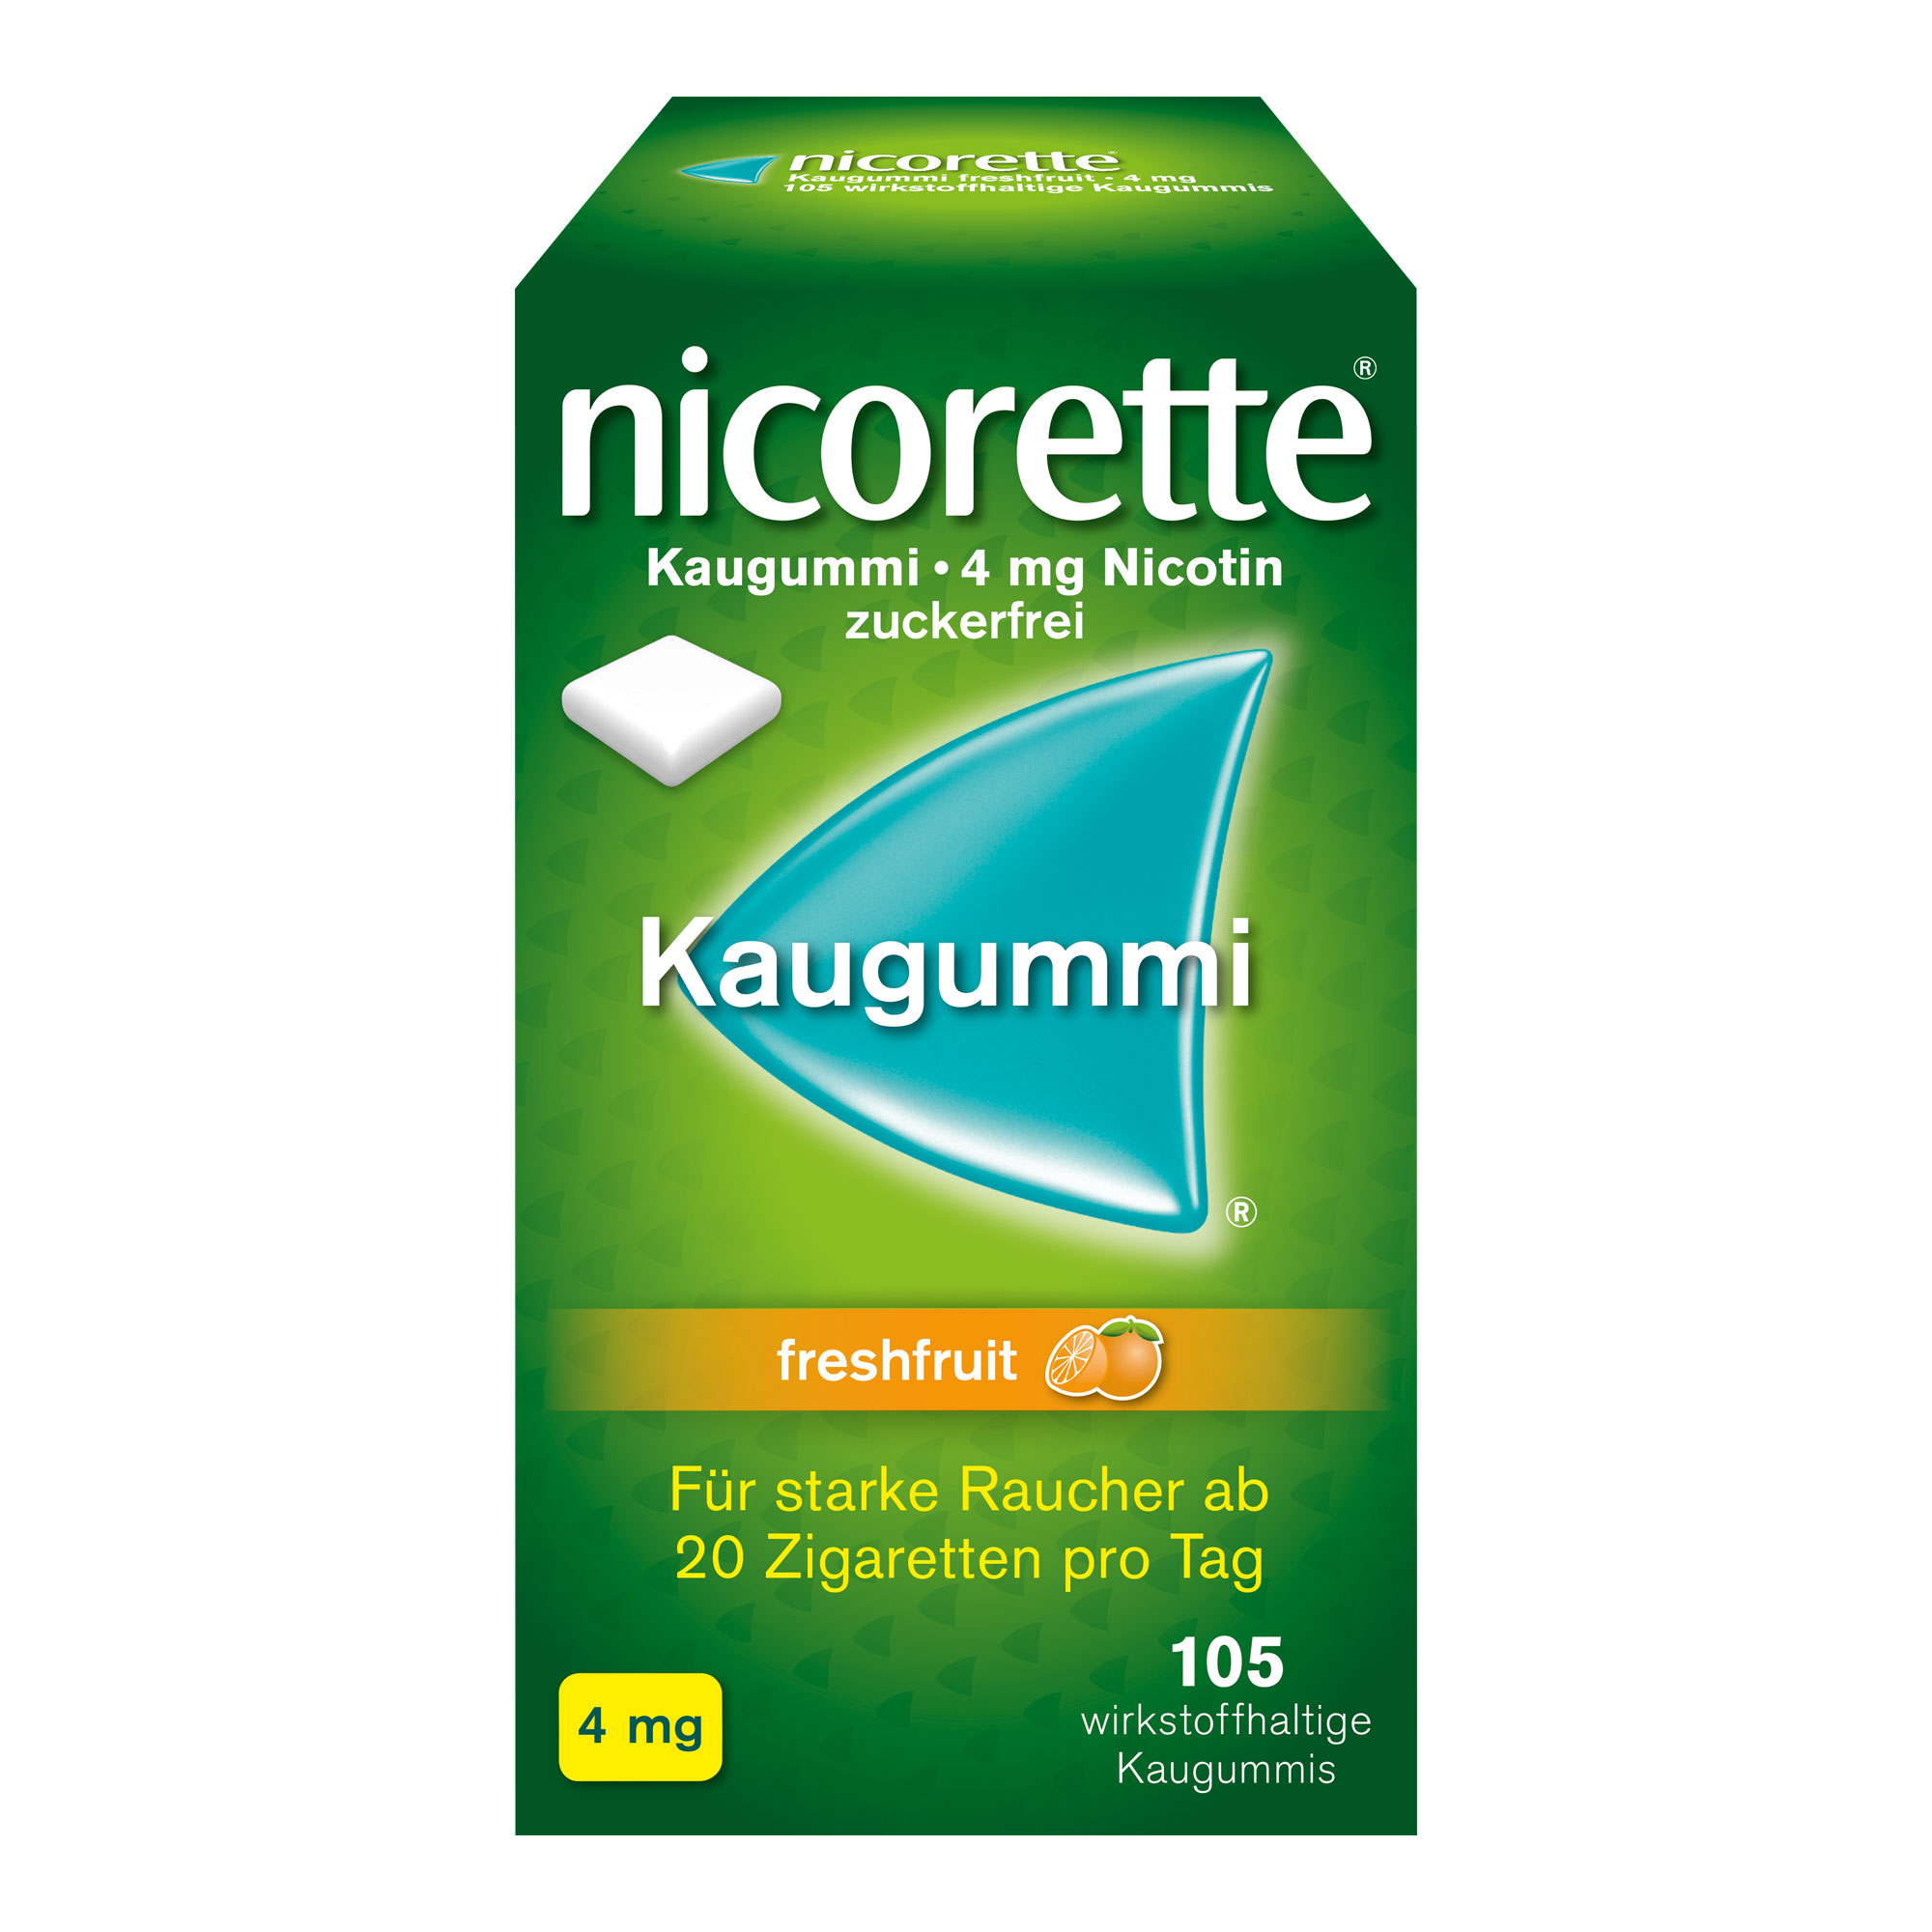 nicorette® Kaugummi freshfruit mit 4 mg Nikotin lindert sowohl Rauchverlangen als auch typische Entzugssymptome während der Raucherentwöhnung. Mit Fruchtgeschmack.